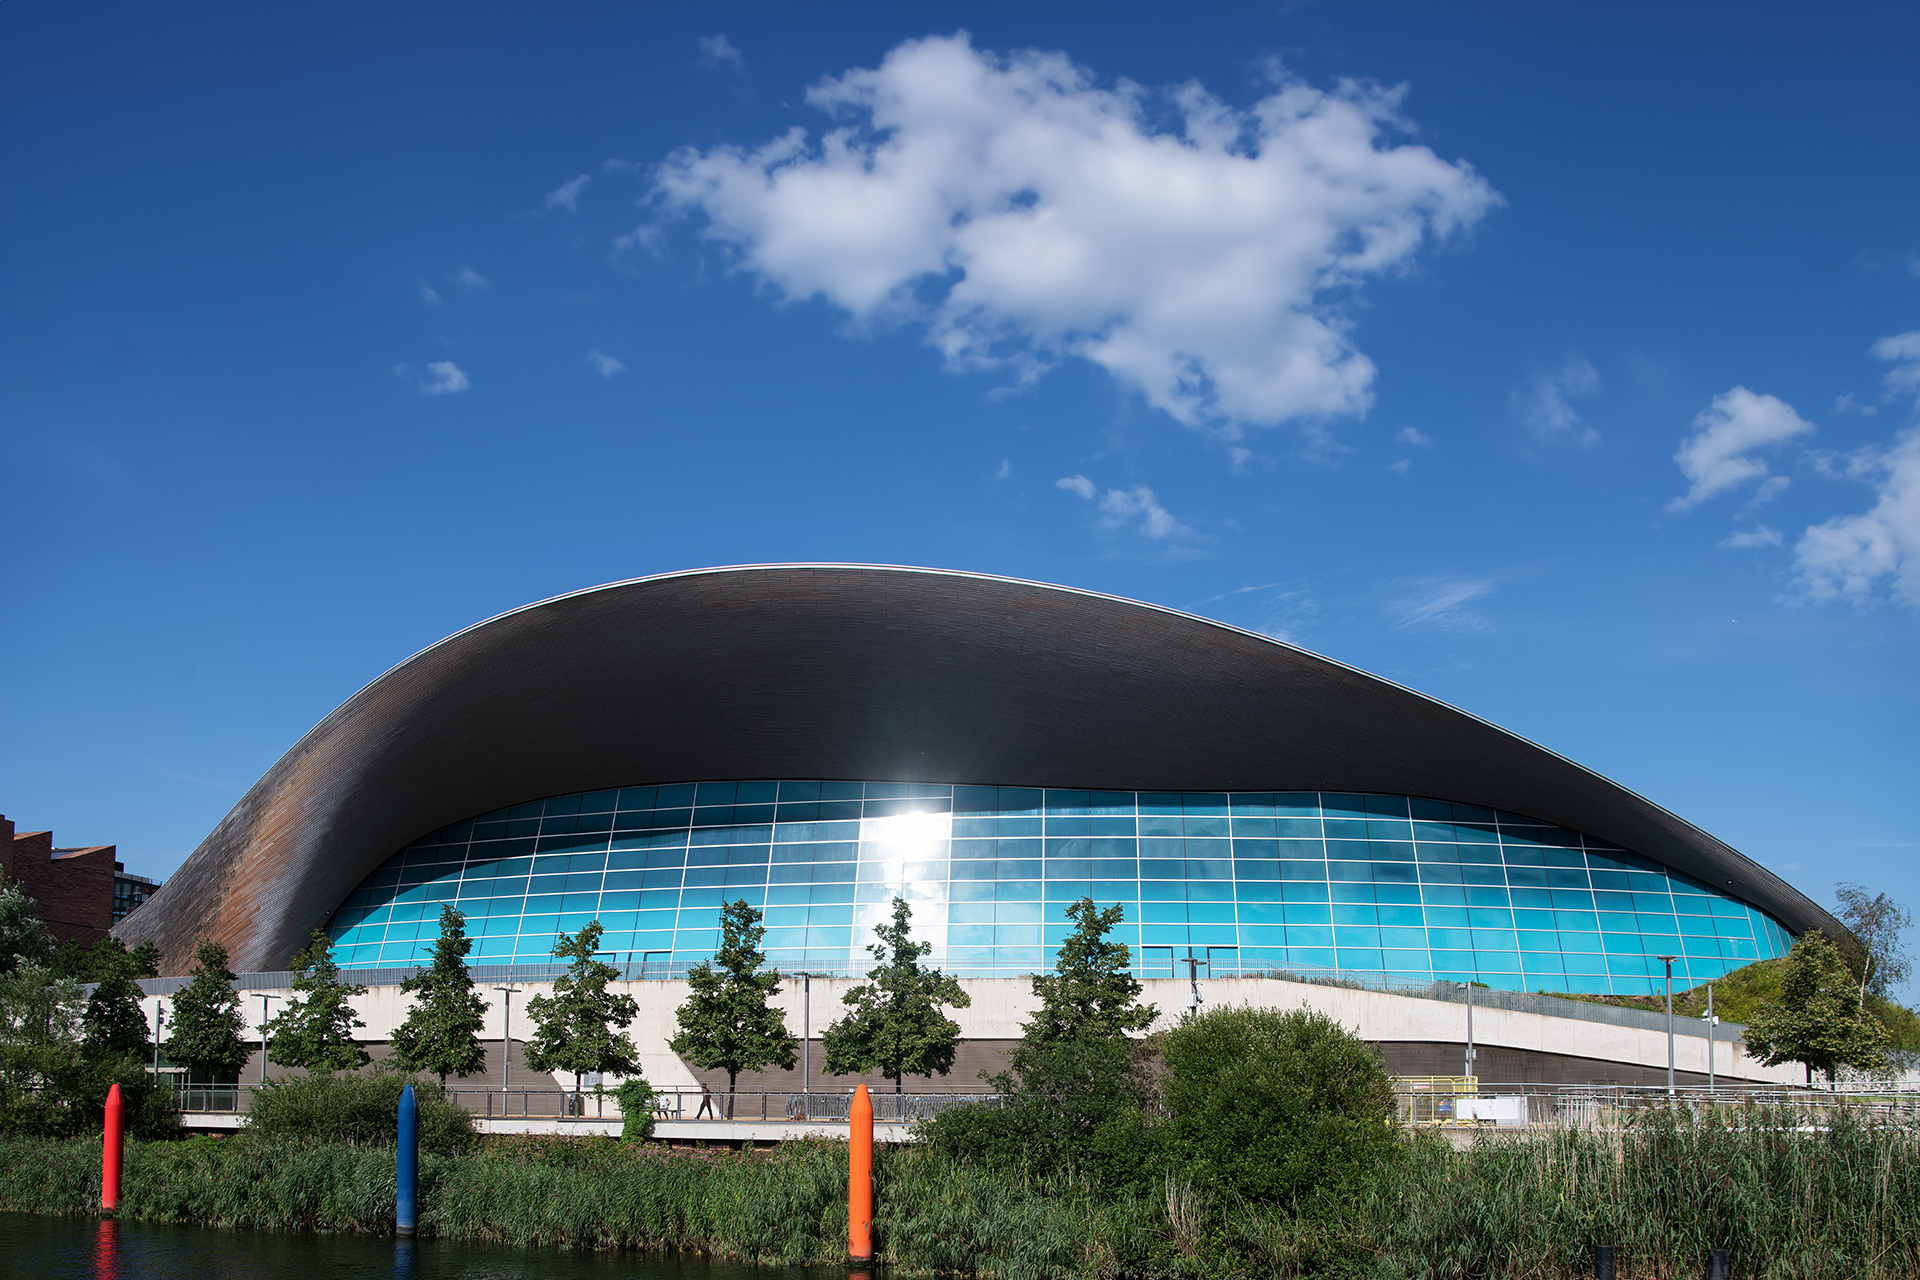 London Aquatic Centre External